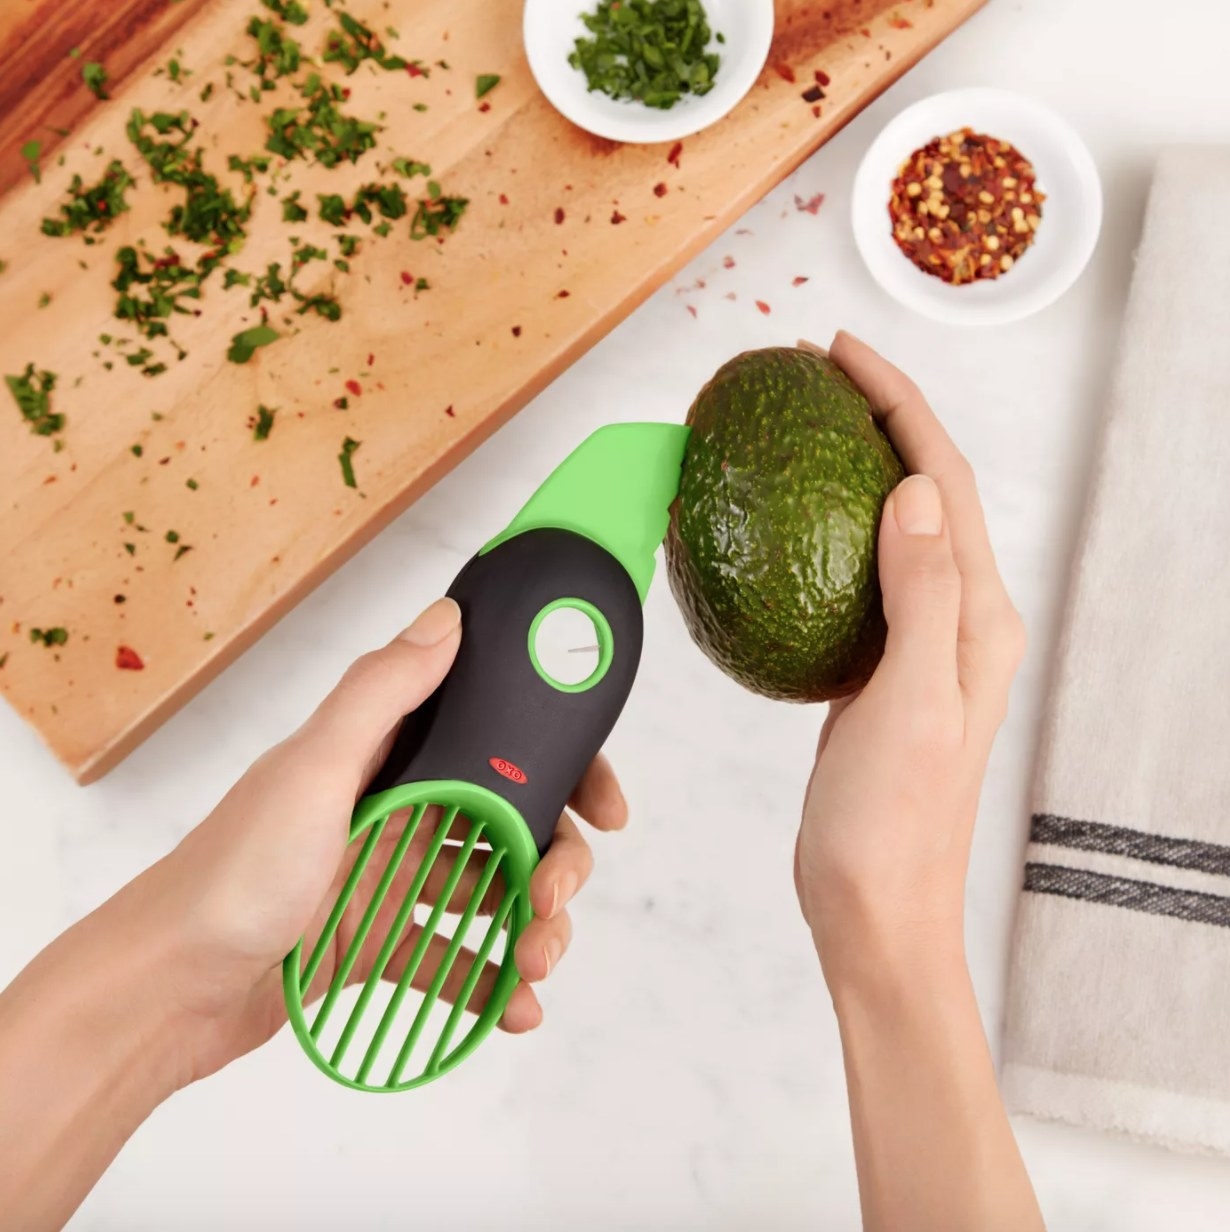 A green avocado slicer tool